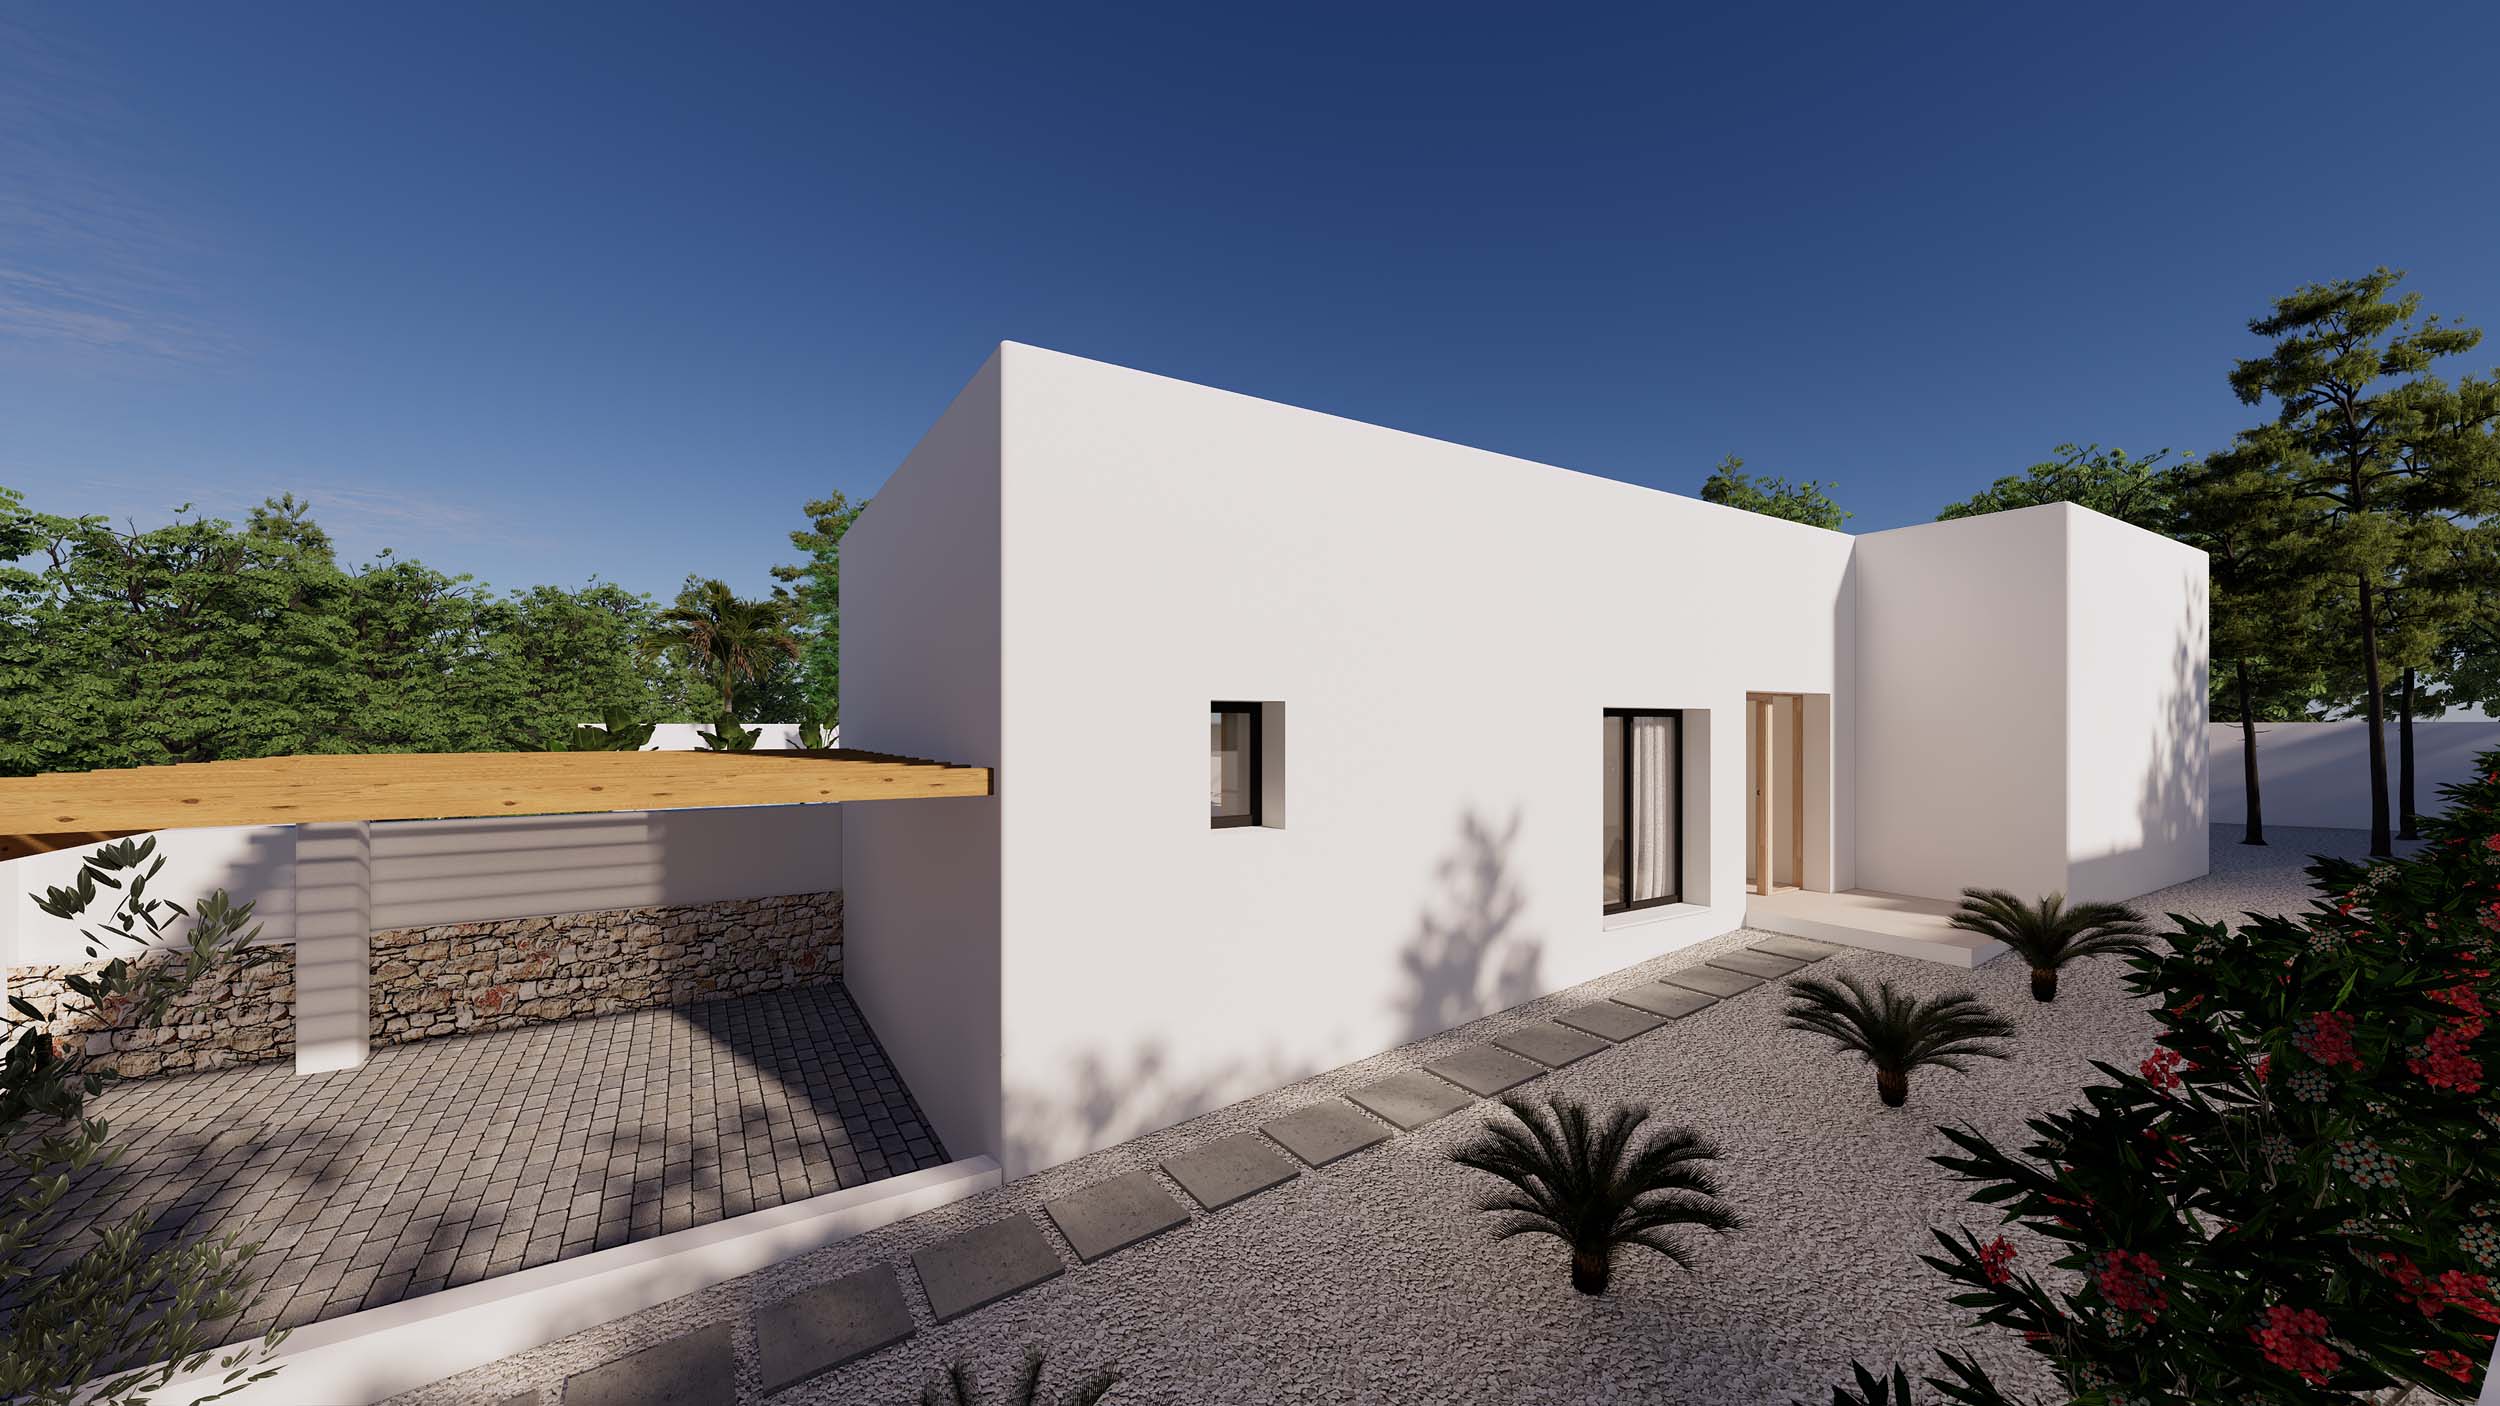 Ibiza-style one level villa for sale in Moraira